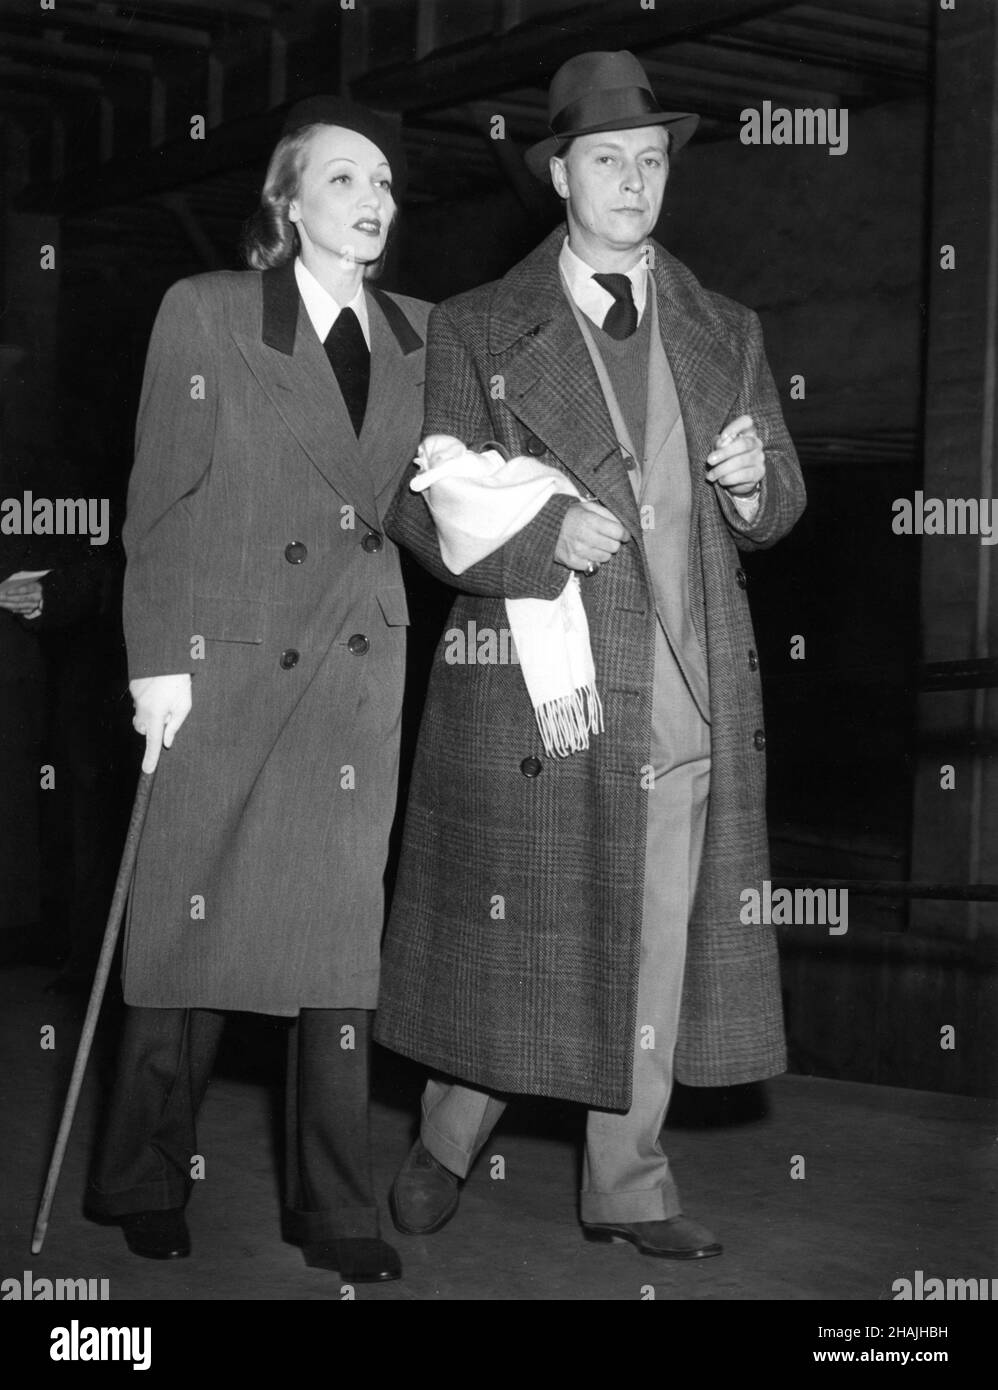 MARLENE DIETRICH (mit Gehstock aufgrund einer Verletzung am Knöchel) und ihr Mann RUDOLF SIEBER gingen 1941 durch die New Yorker Grand Central Station Stockfoto